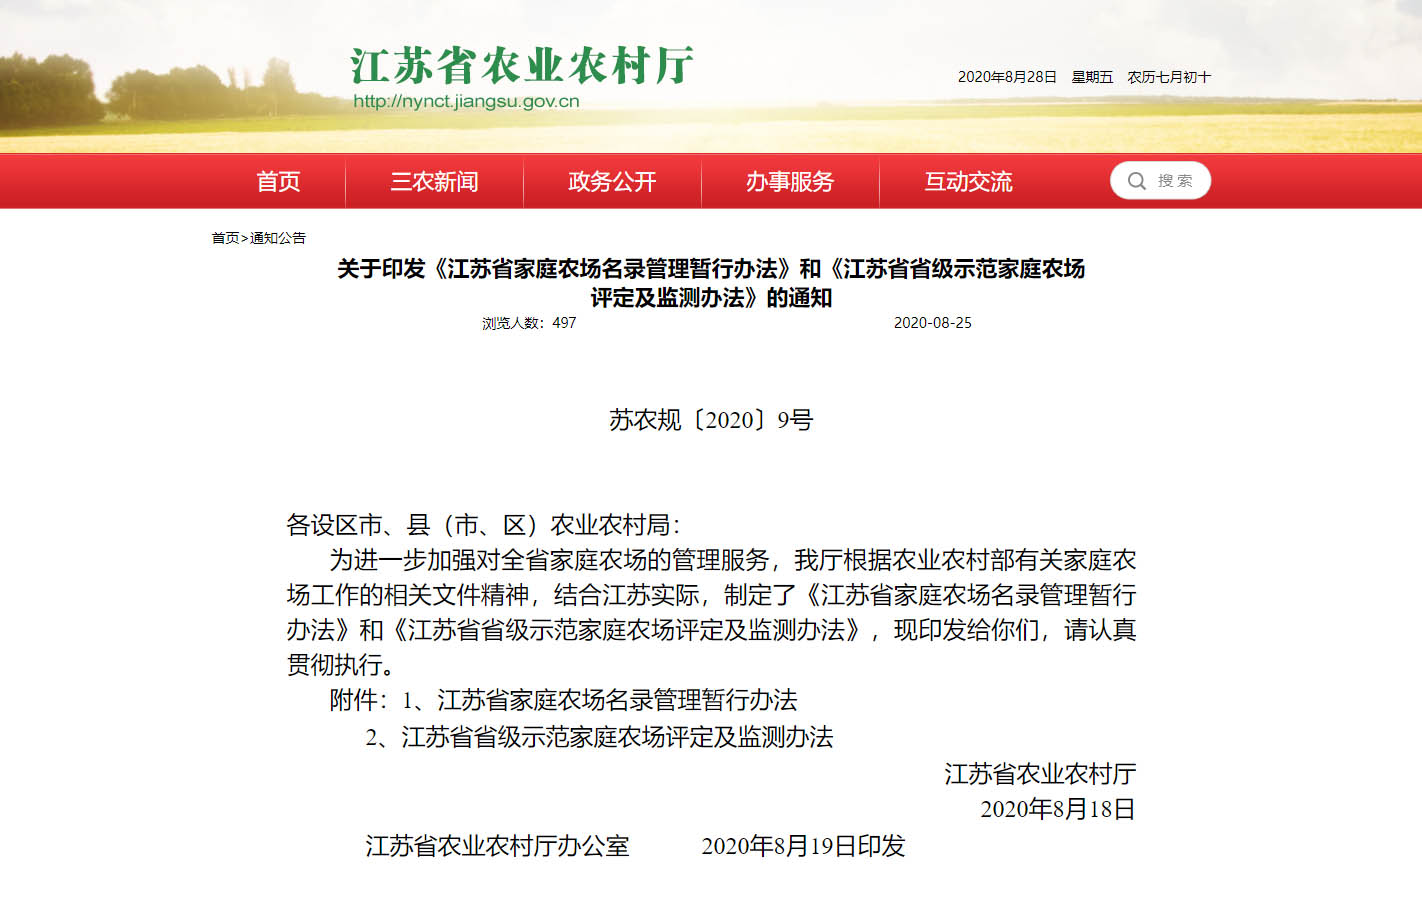 江蘇省家庭農場名錄管理暫行辦法